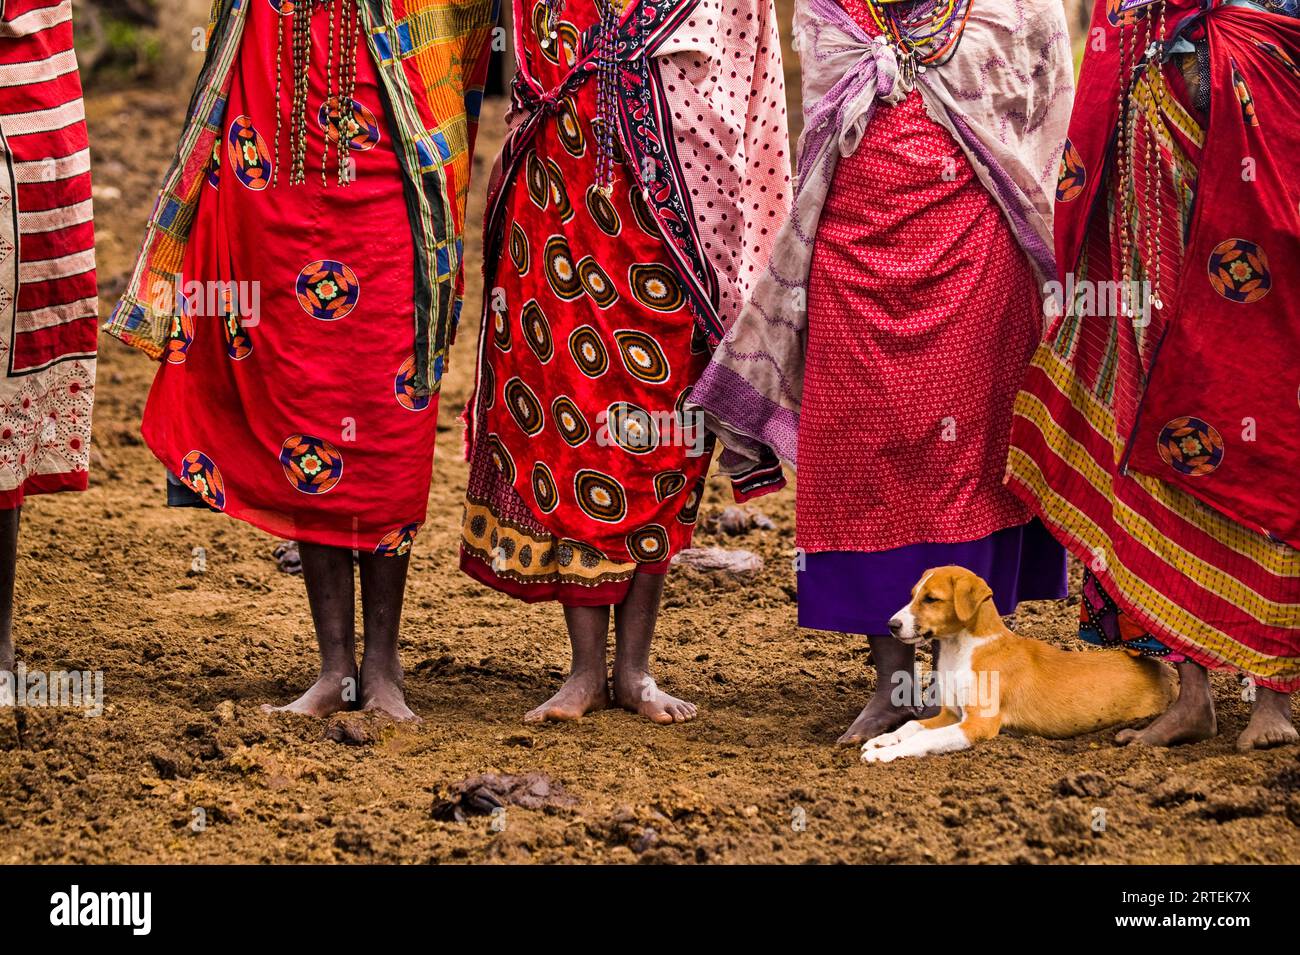 Chien repose au pied de femmes Masai vêtues de rouge préféré ; Masai Mara, Kenya Banque D'Images